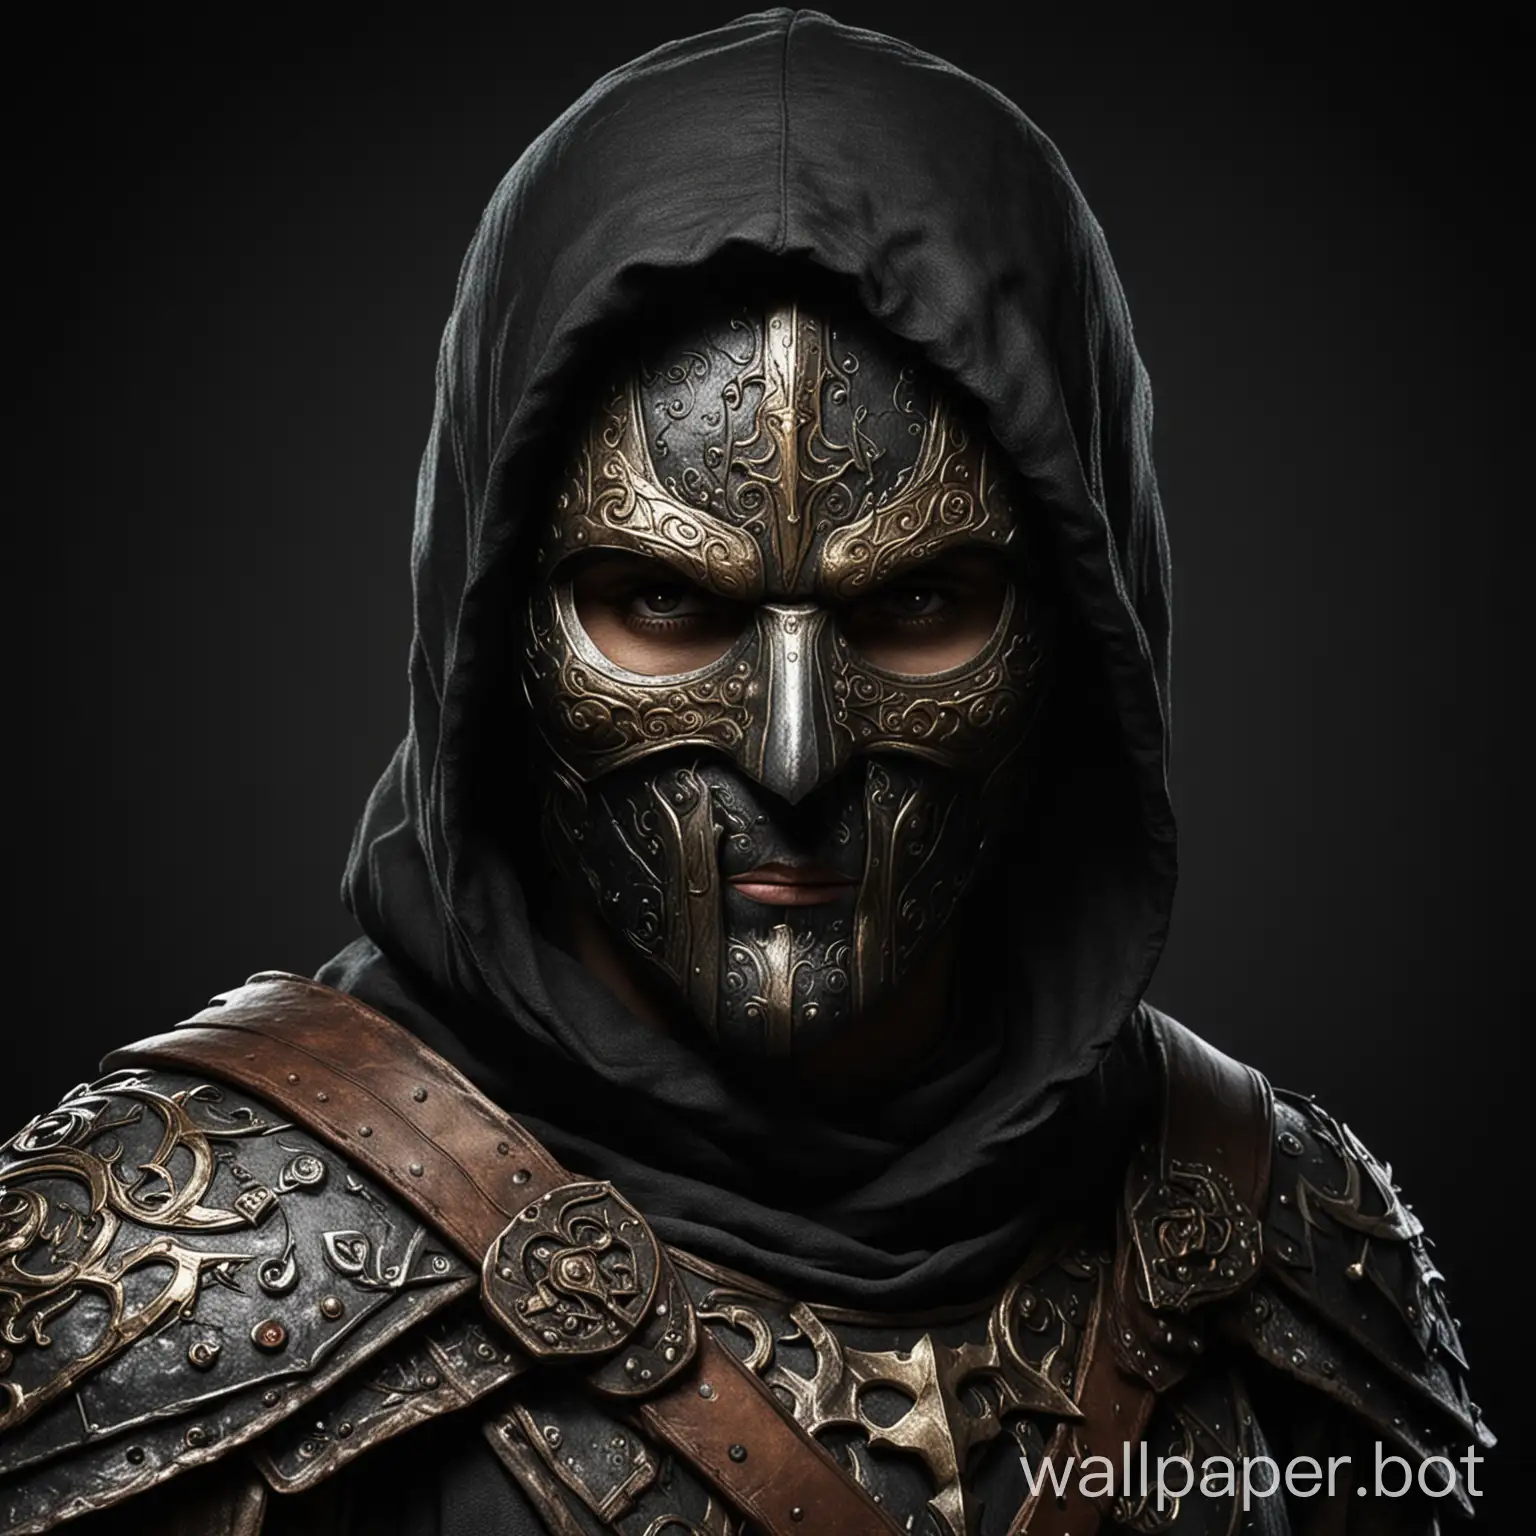 Fantasy-Medieval-Avenger-Hero-in-Mask-Against-Black-Background